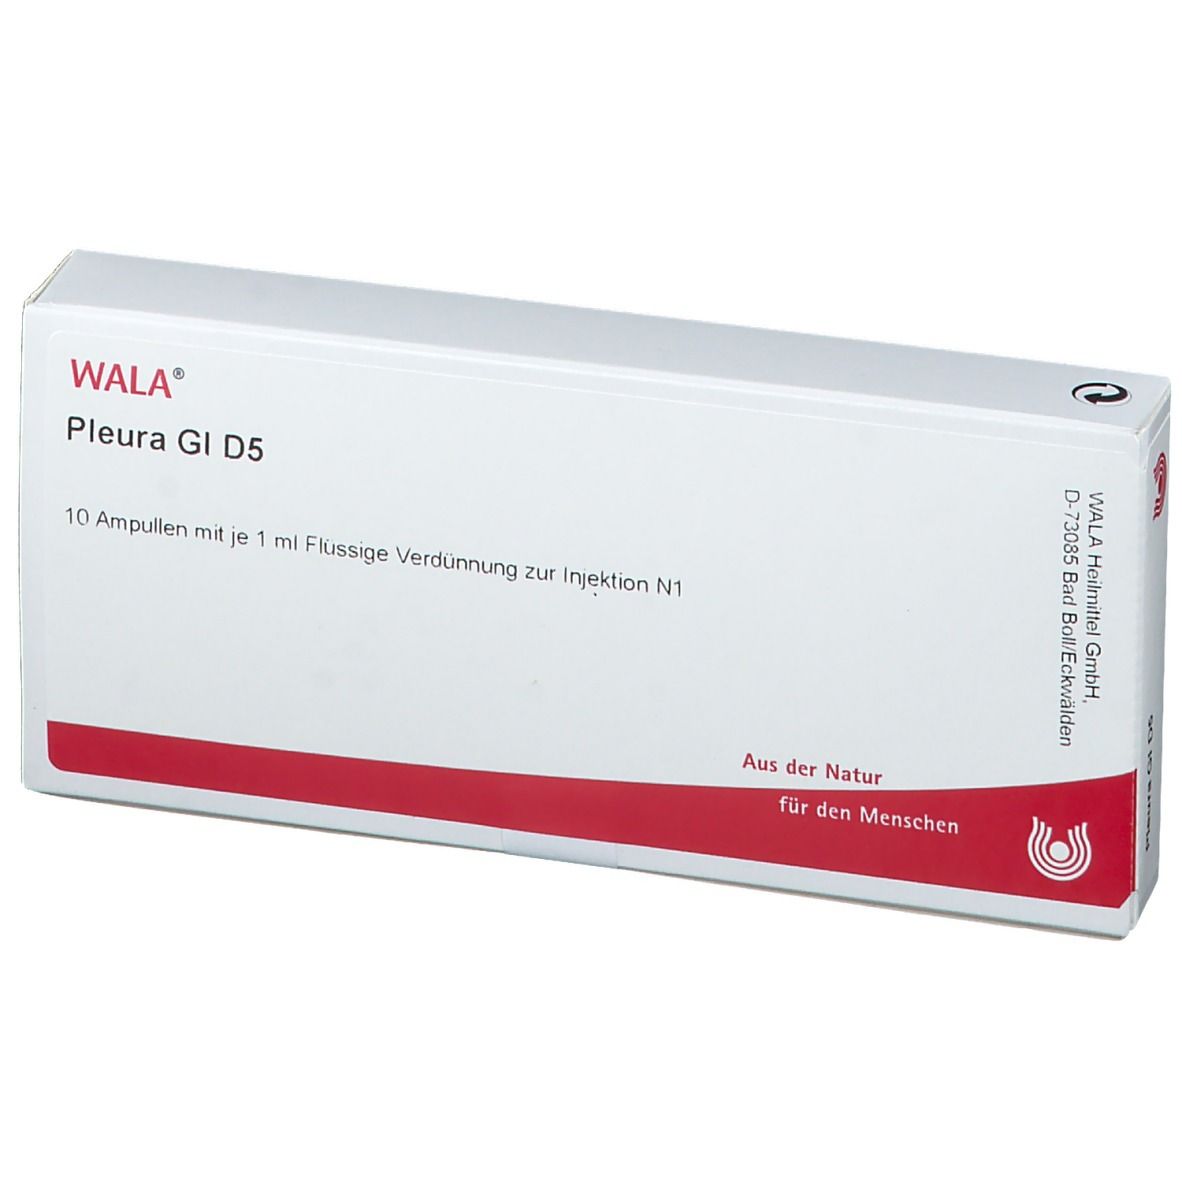 WALA® Pleura Gl D 5